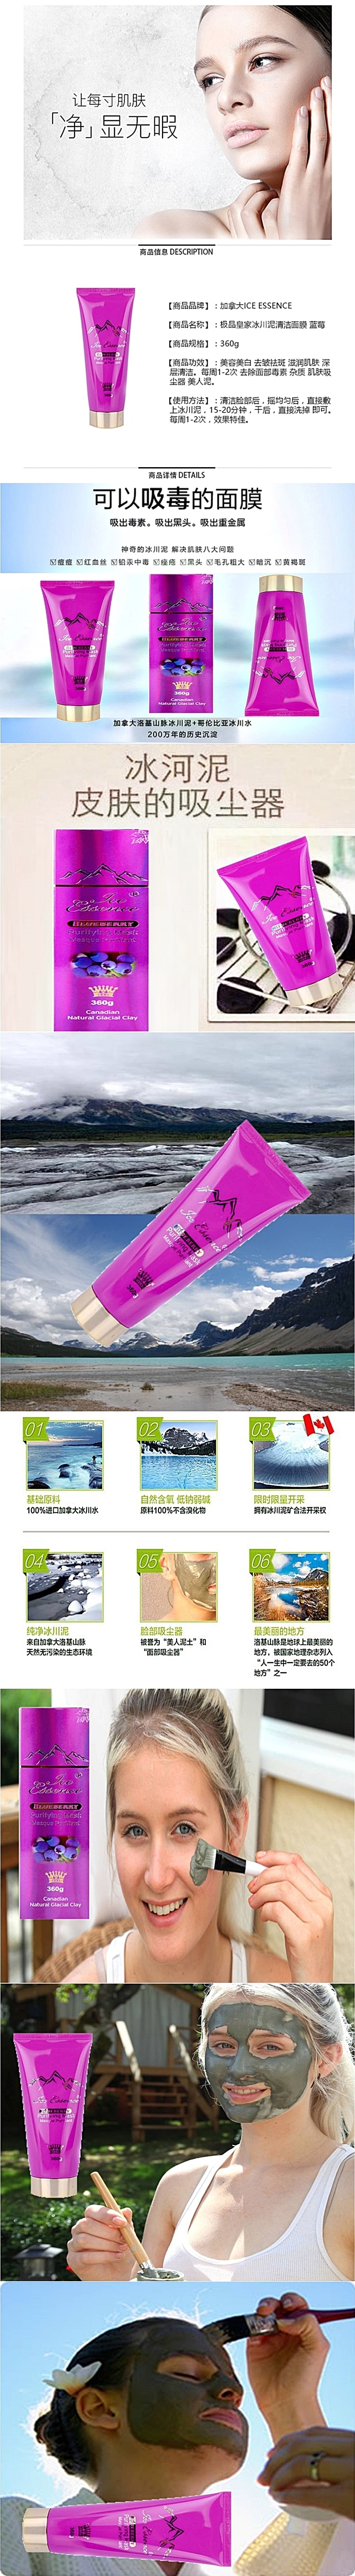 加拿大ICE ESSENCE 极品皇家冰川泥清洁面膜 蓝莓 360g